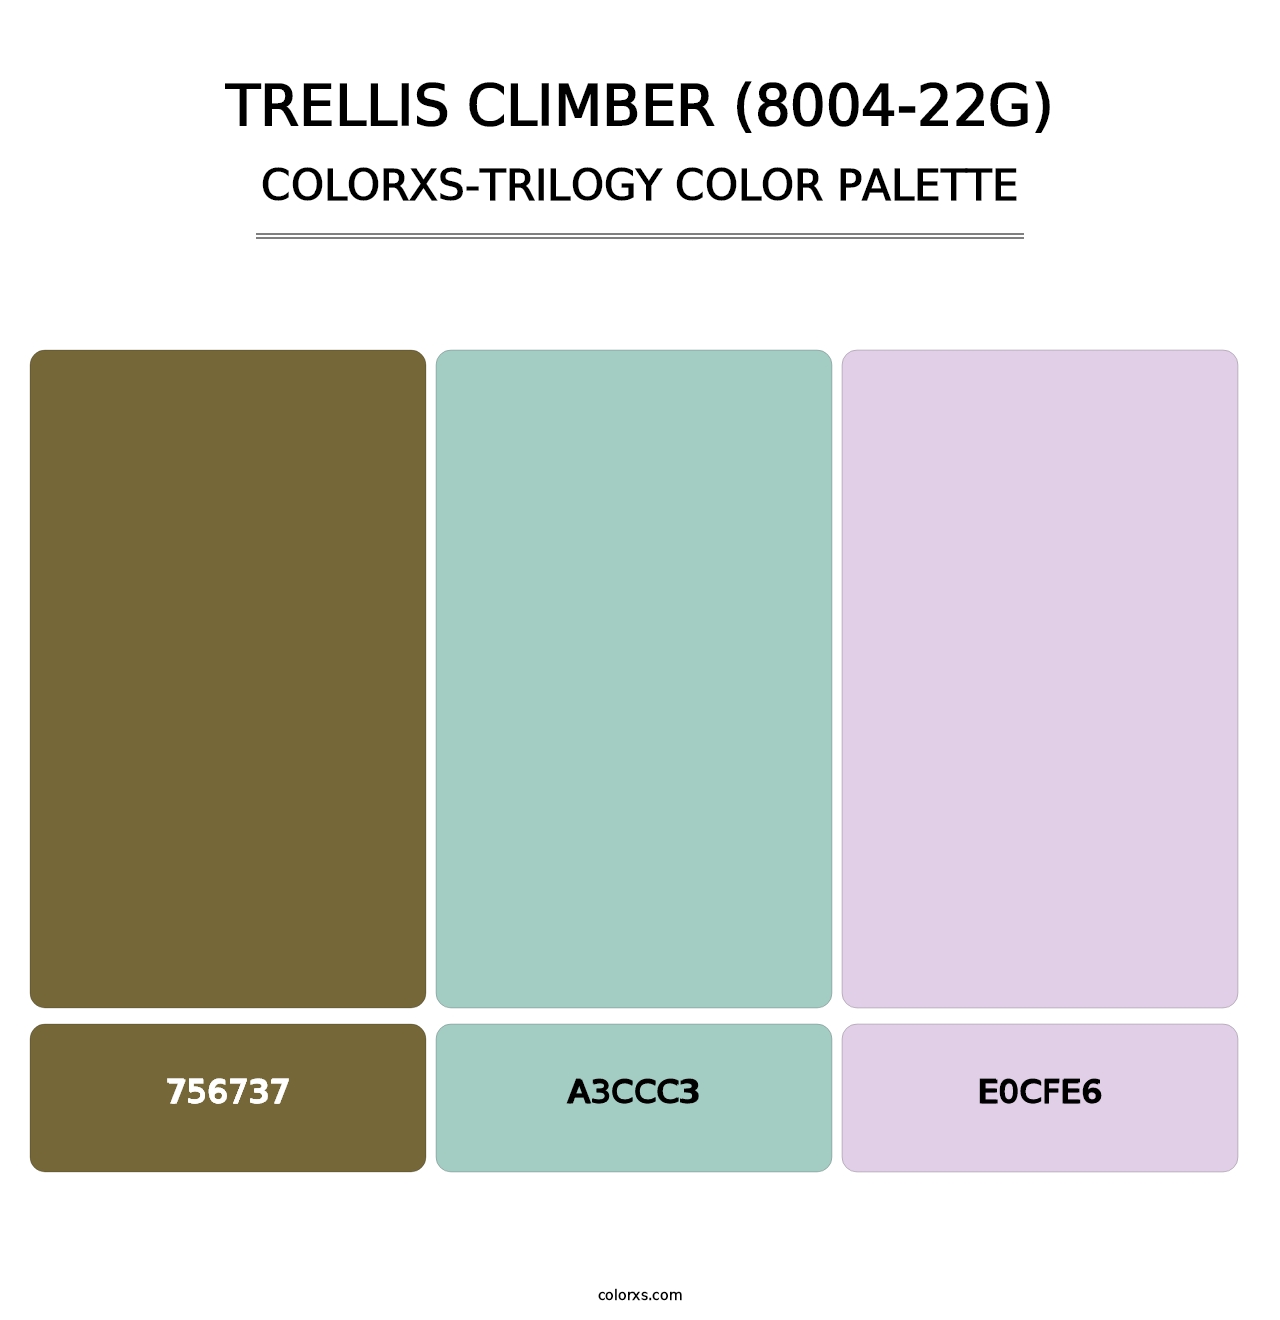 Trellis Climber (8004-22G) - Colorxs Trilogy Palette